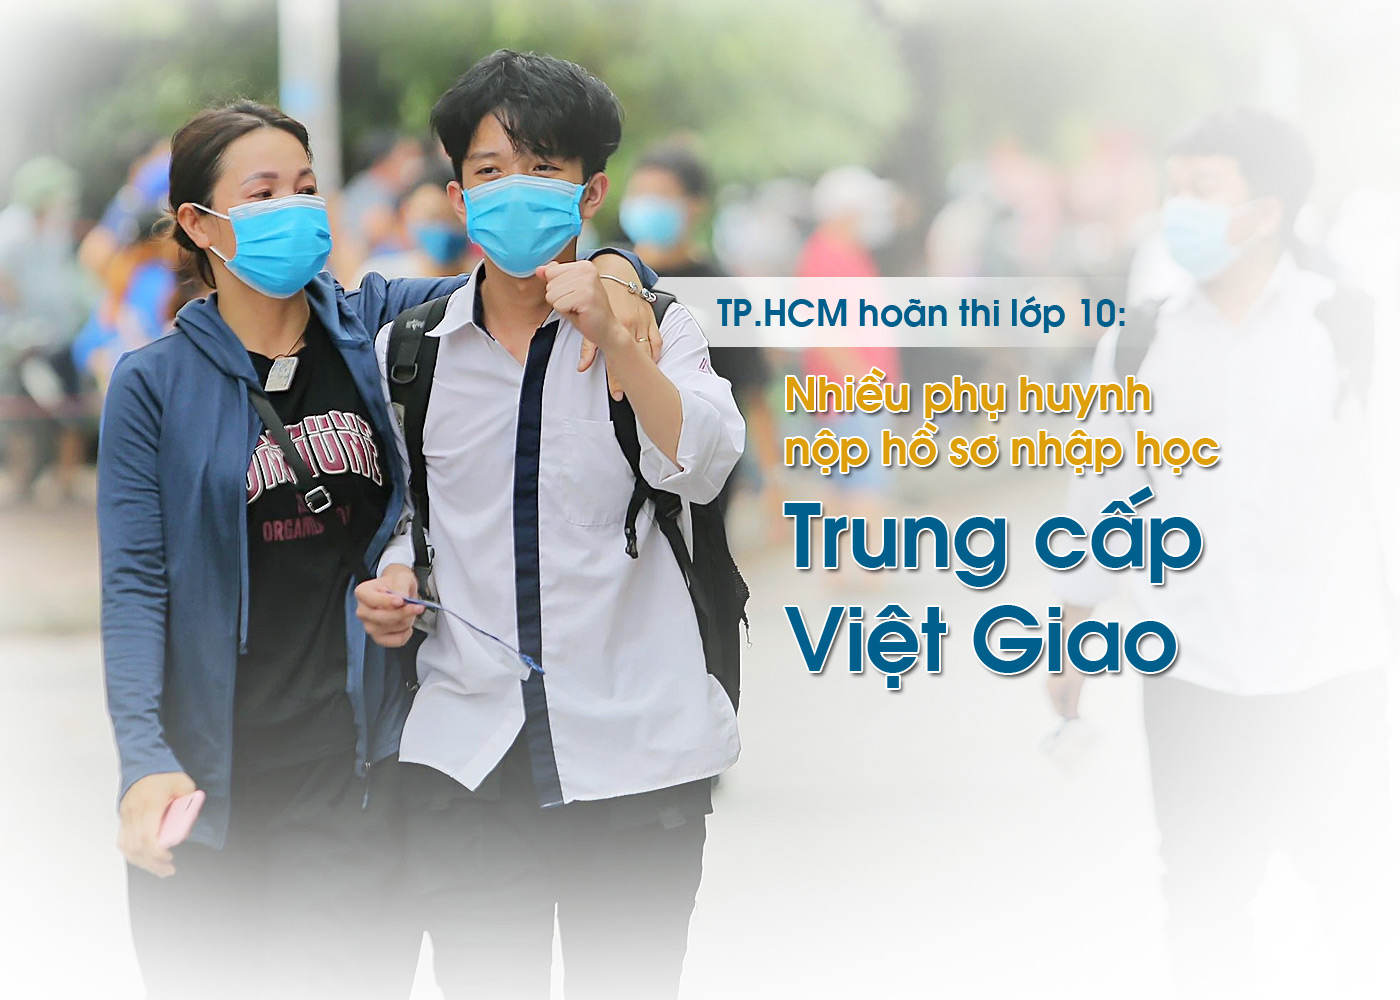 TP.HCM hoãn thi lớp 10 - nhiều phụ huynh nộp hồ sơ nhập học Trung cấp Việt Giao - Ảnh 1